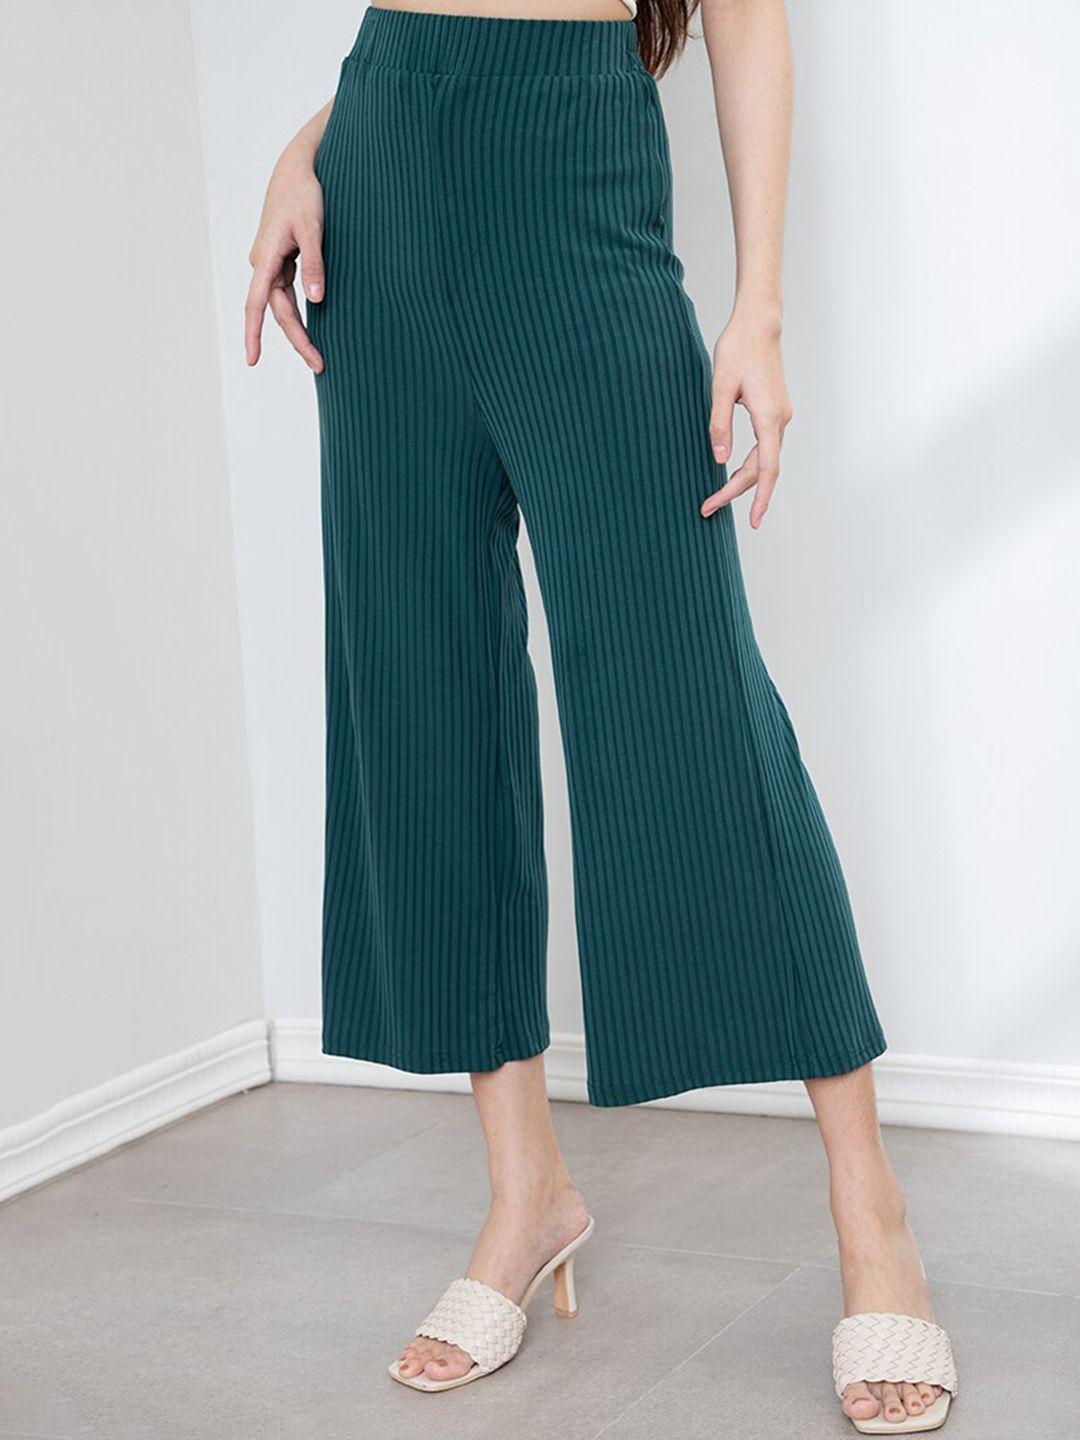 origin by zalora women green modal striped flared trousers